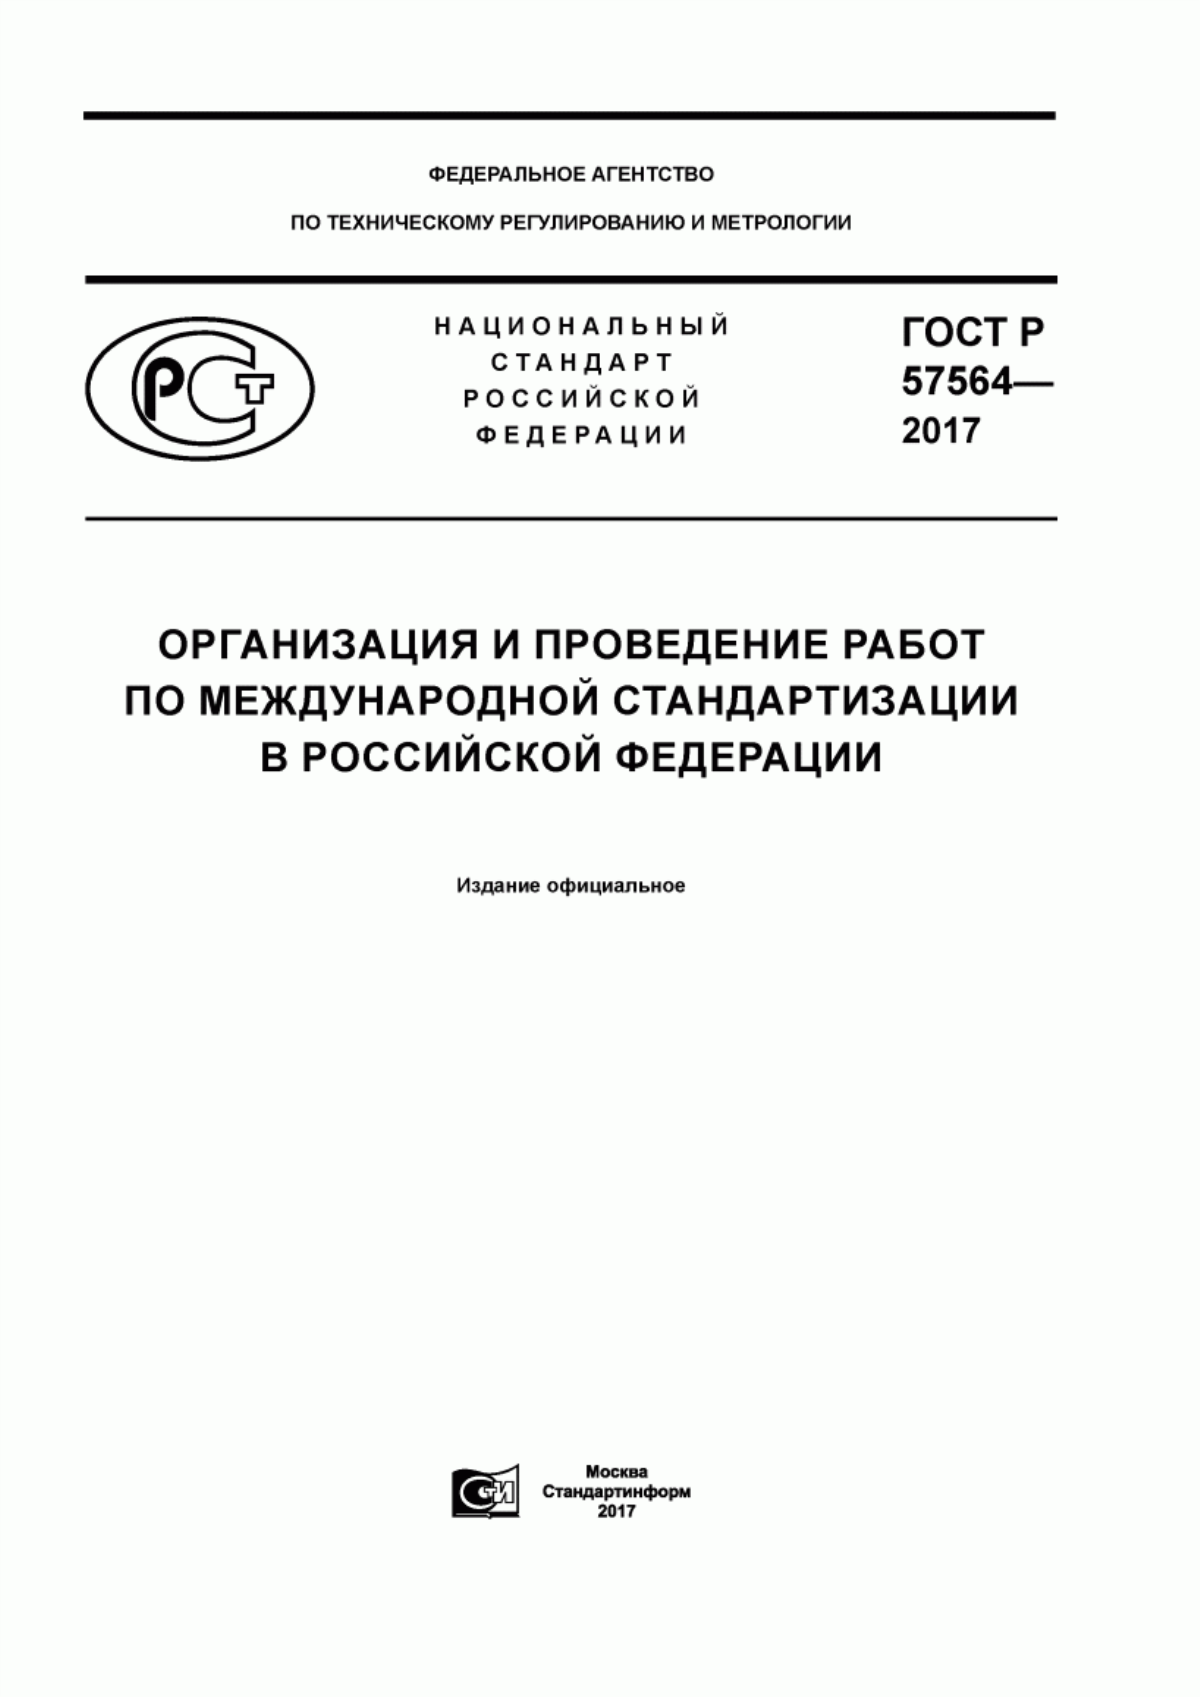 ГОСТ Р 57564-2017 Организация и проведение работ по международной стандартизации в Российской Федерации